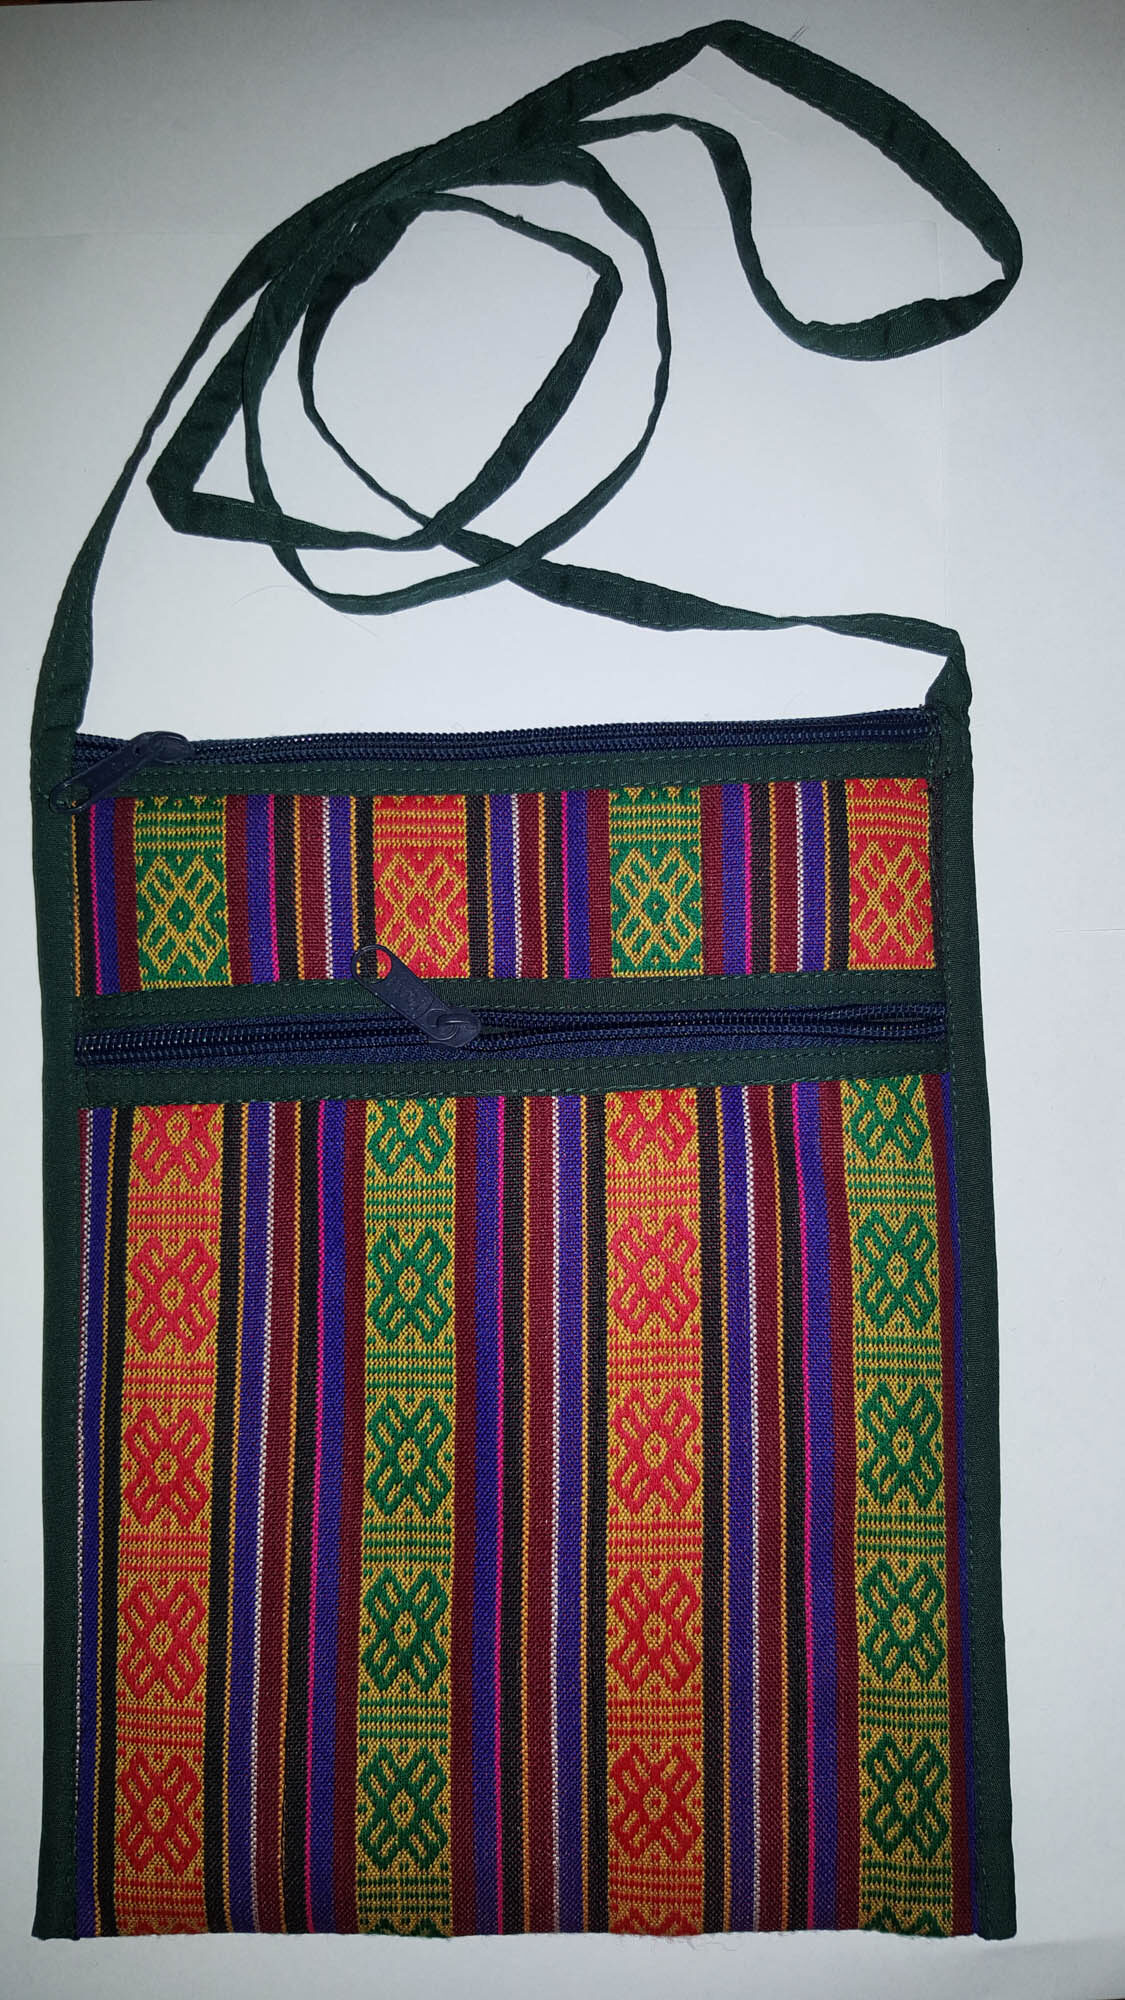 Side Pocket Shoulder Bag Sewing Pattern Hobo Bag Easy Sewing Pattern 3  Sizes Daily Bag Beginner Sewing Pattern Instant Download - Etsy | Beginner  sewing patterns, Bag patterns to sew, Fashion sewing